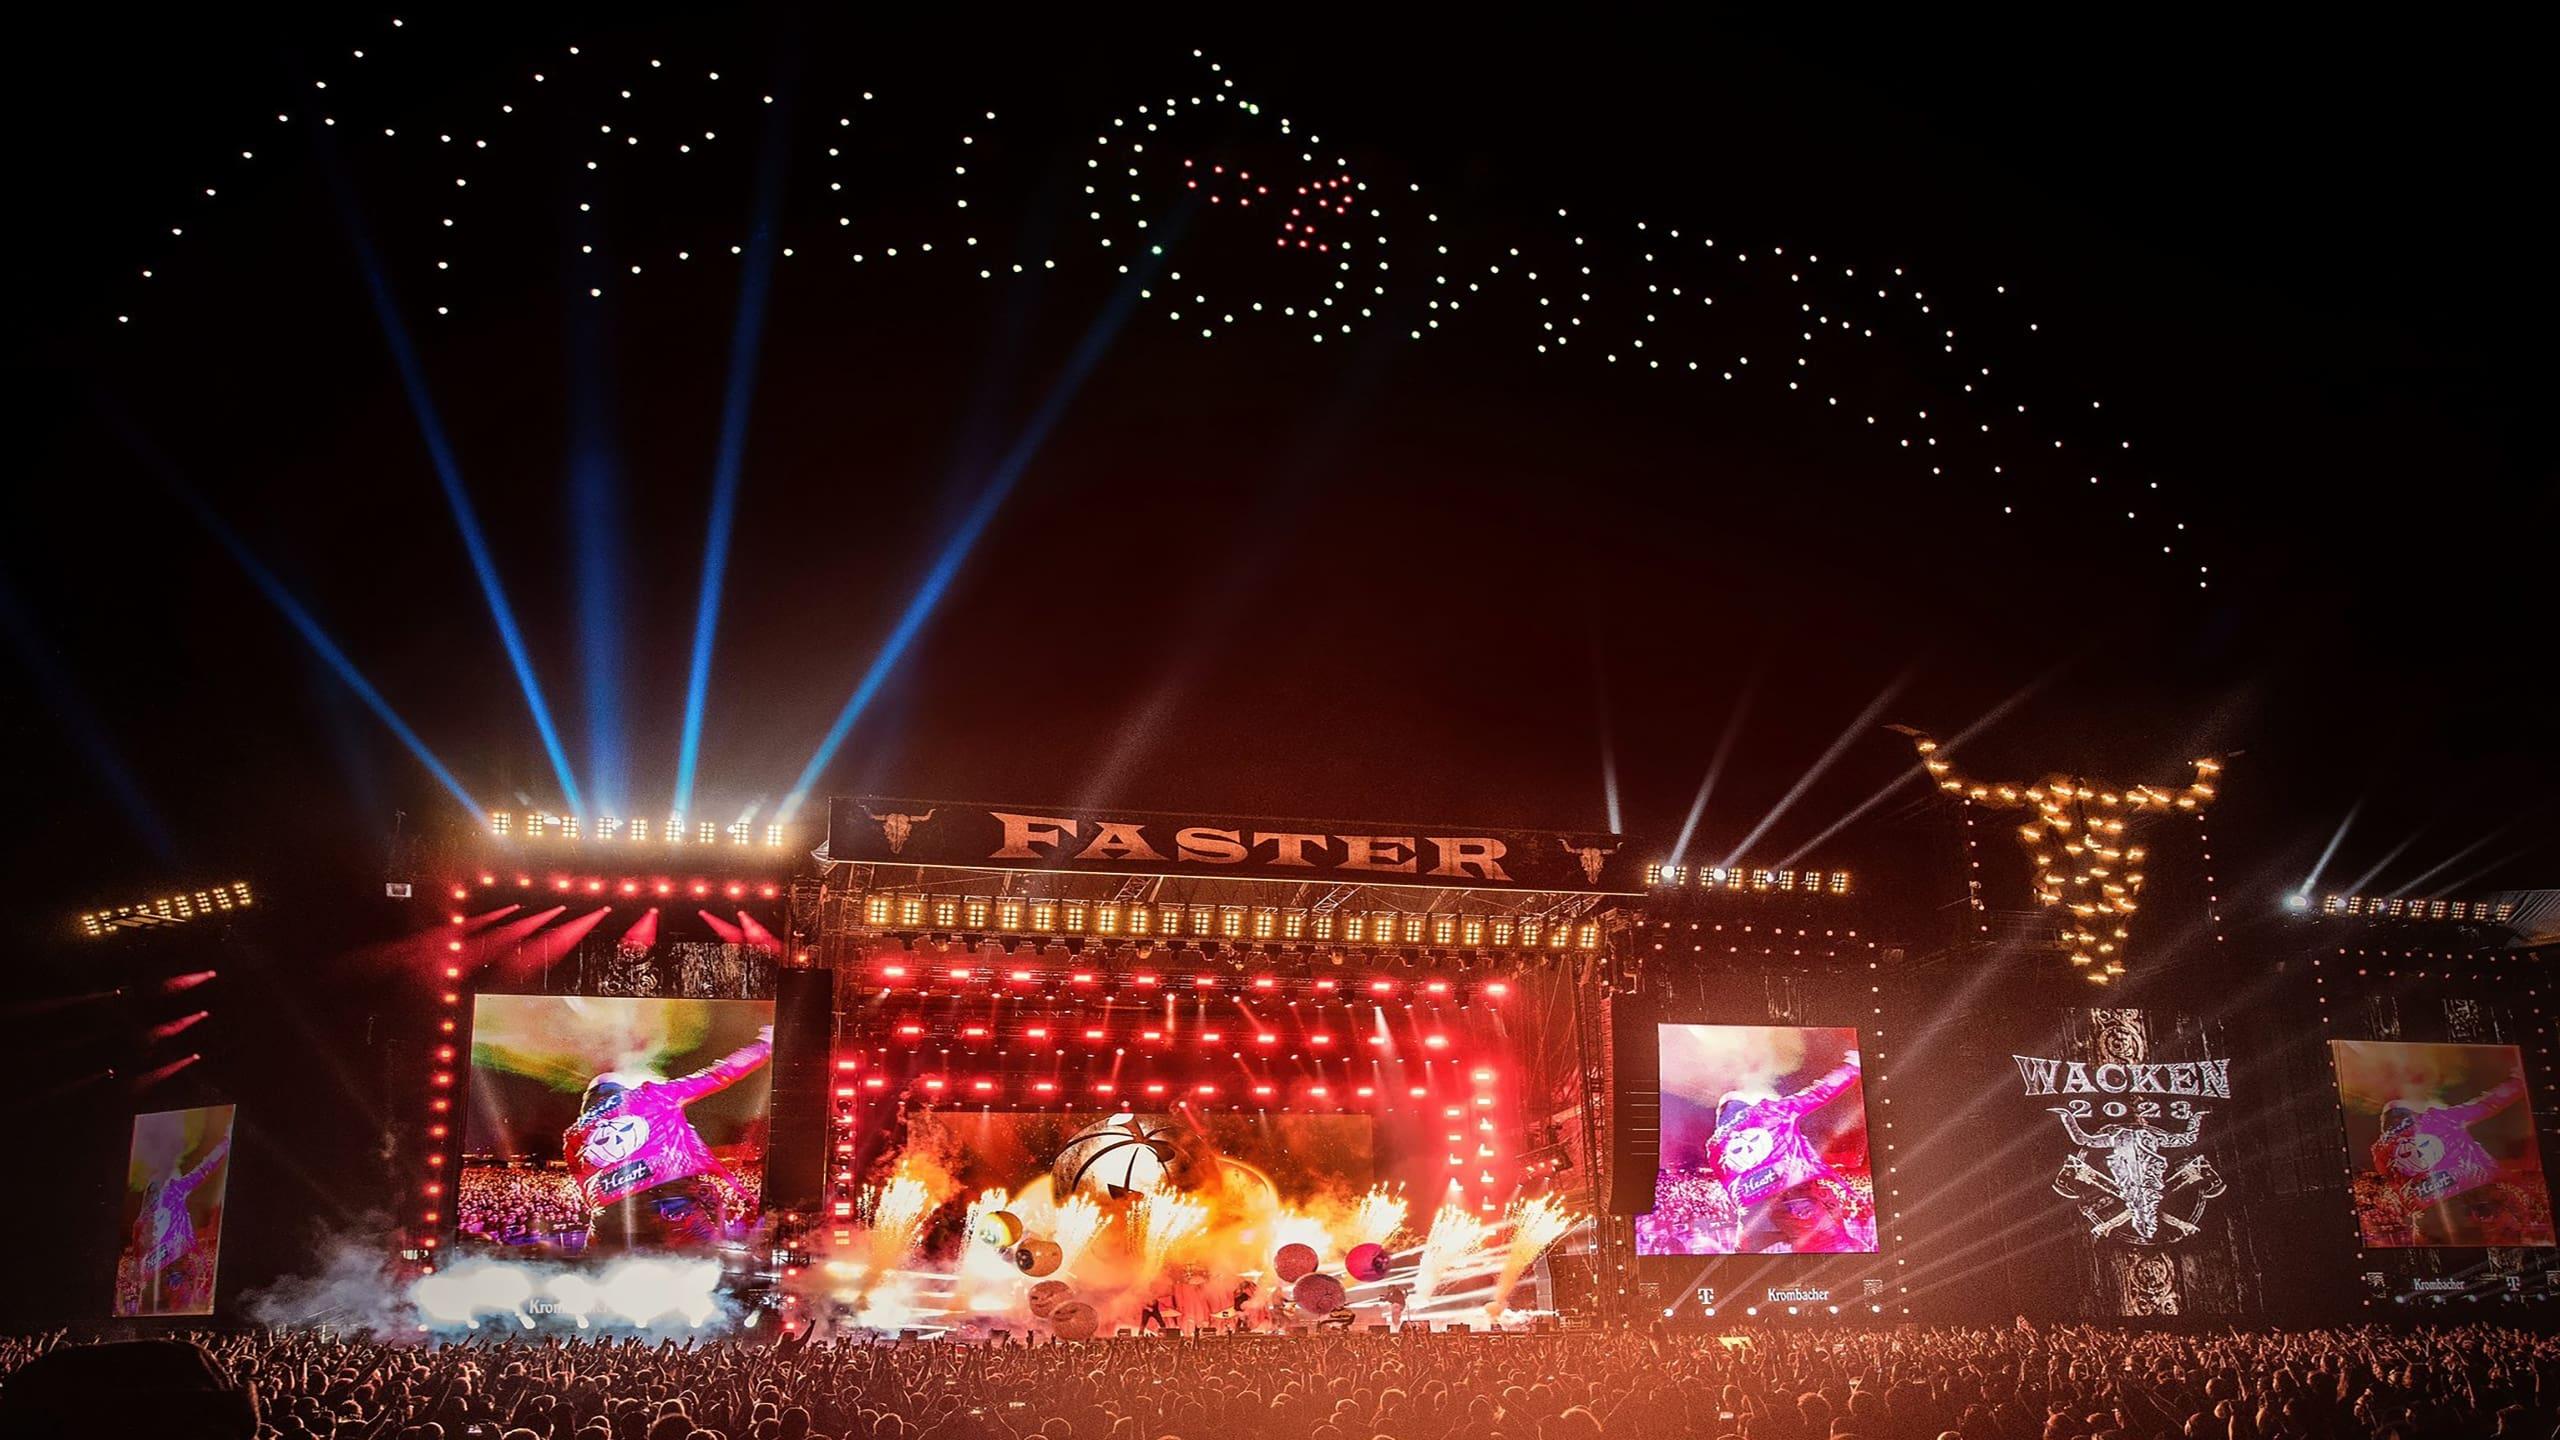 Helloween - Live at Wacken Open Air 2023 backdrop